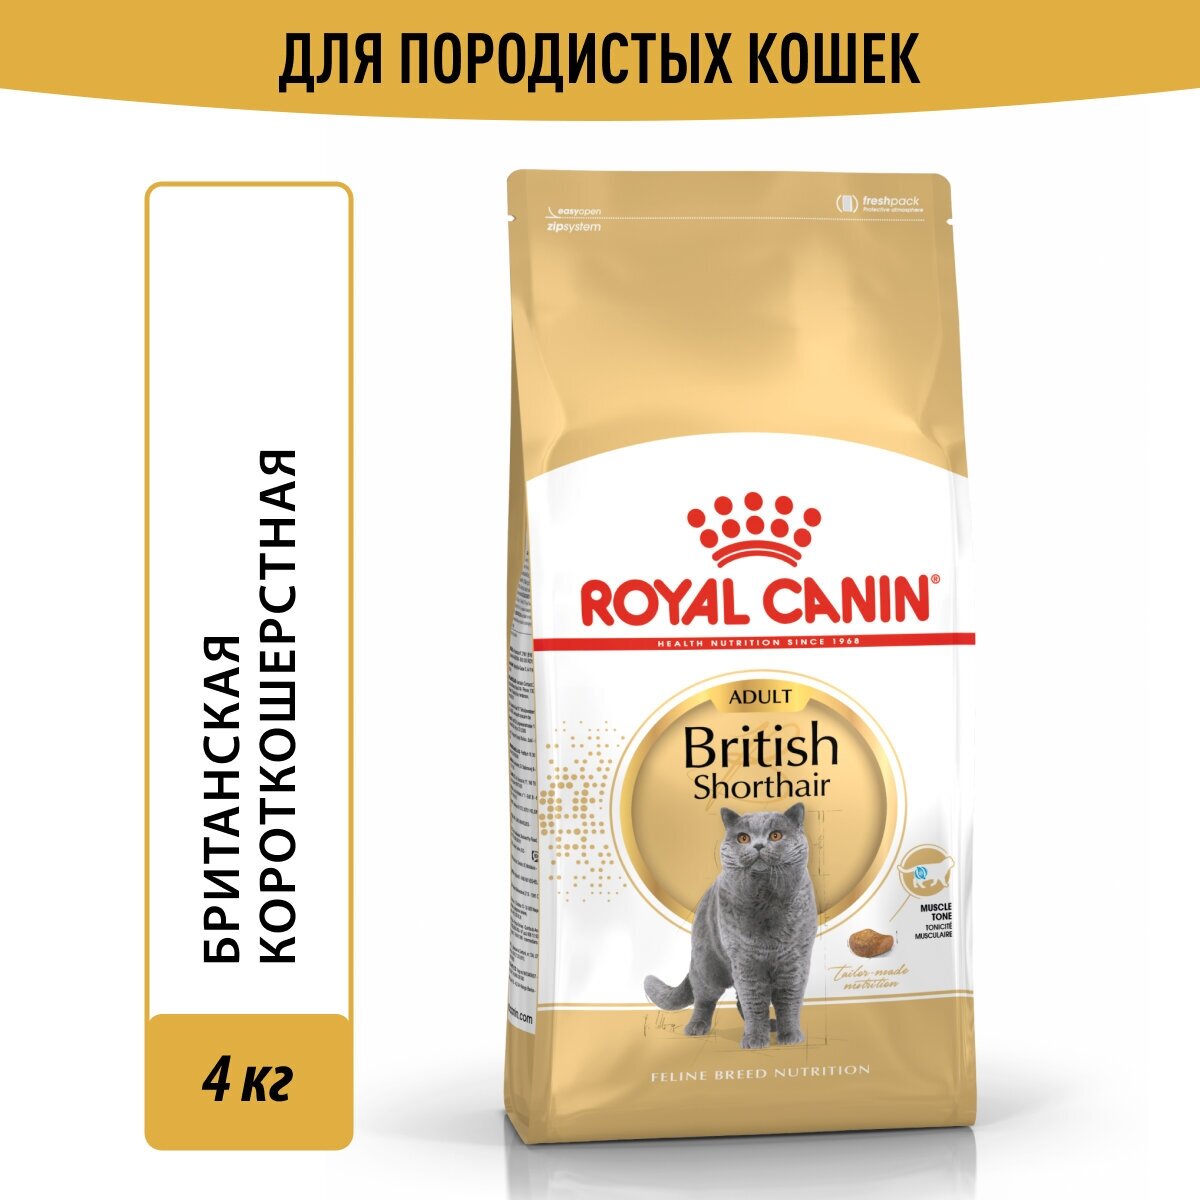 Сухой корм Royal Canin British Shorthair Adult (Британская Короткошерстная Эдалт) для взрослых кошек британской породы от 1 года до 12 лет, 4 кг